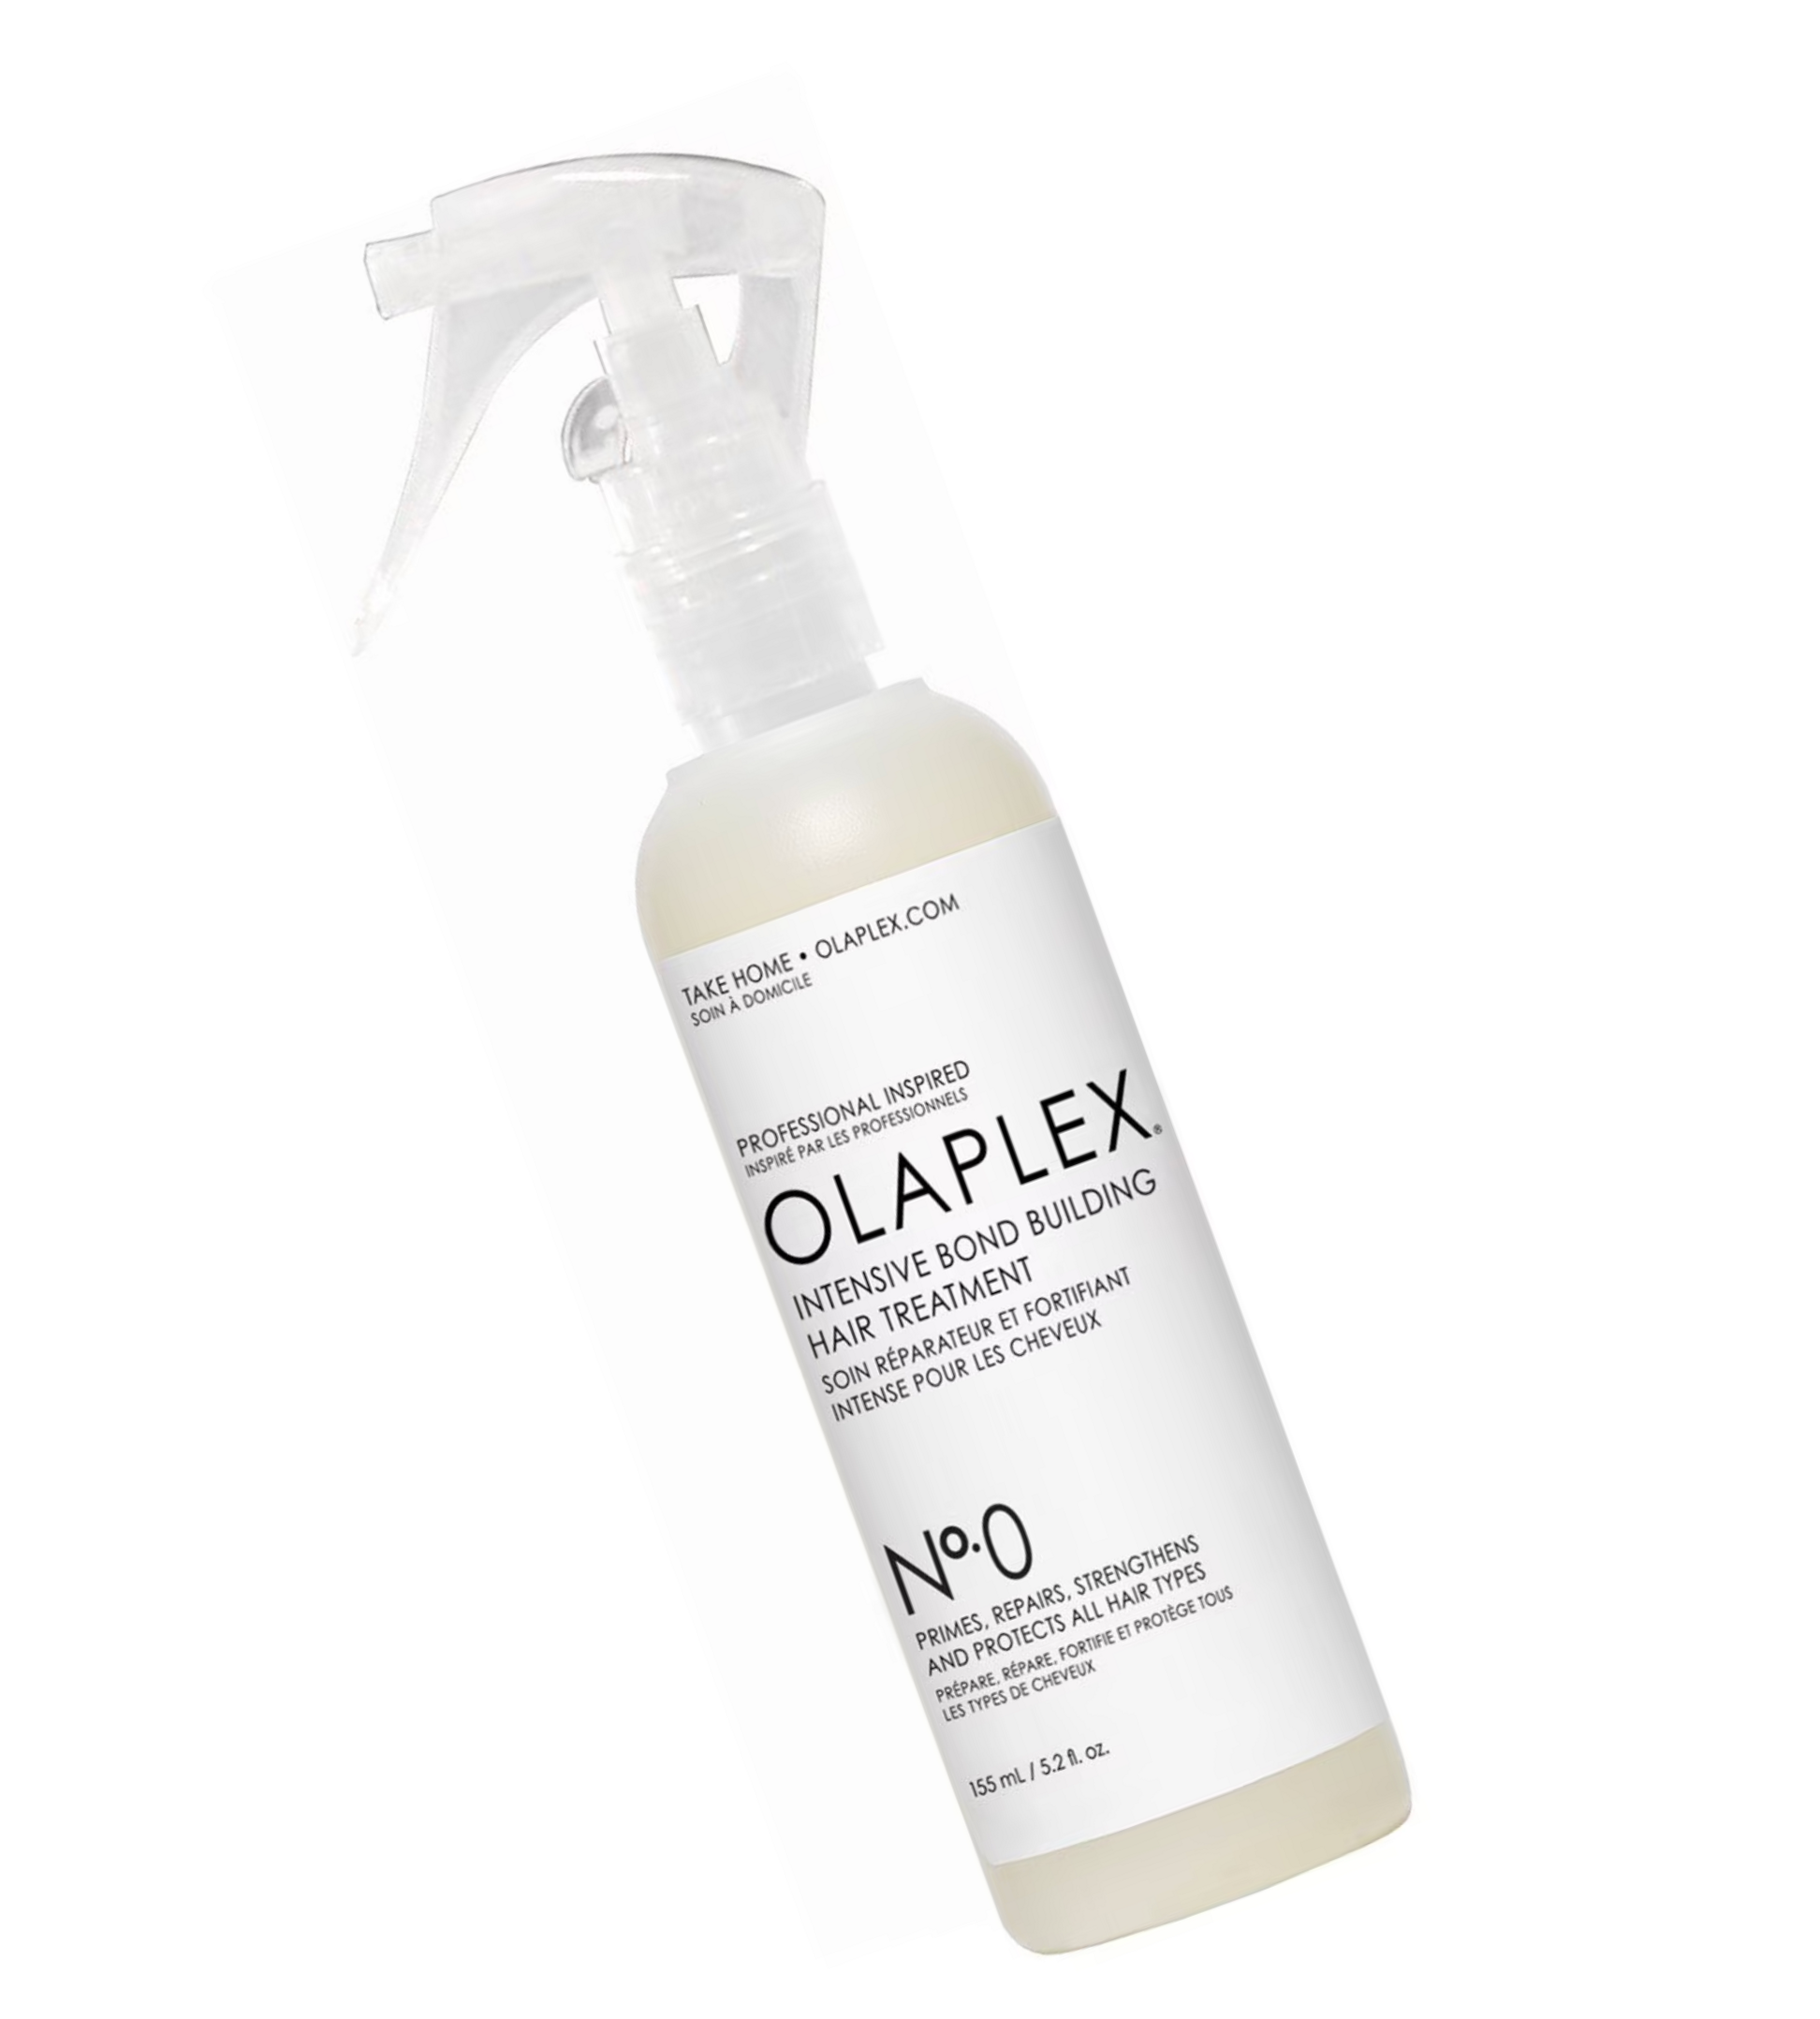 Soin réparateur fortifiant intense N°0 Olaplex Intensive bond building hair treatment - Crème Salon